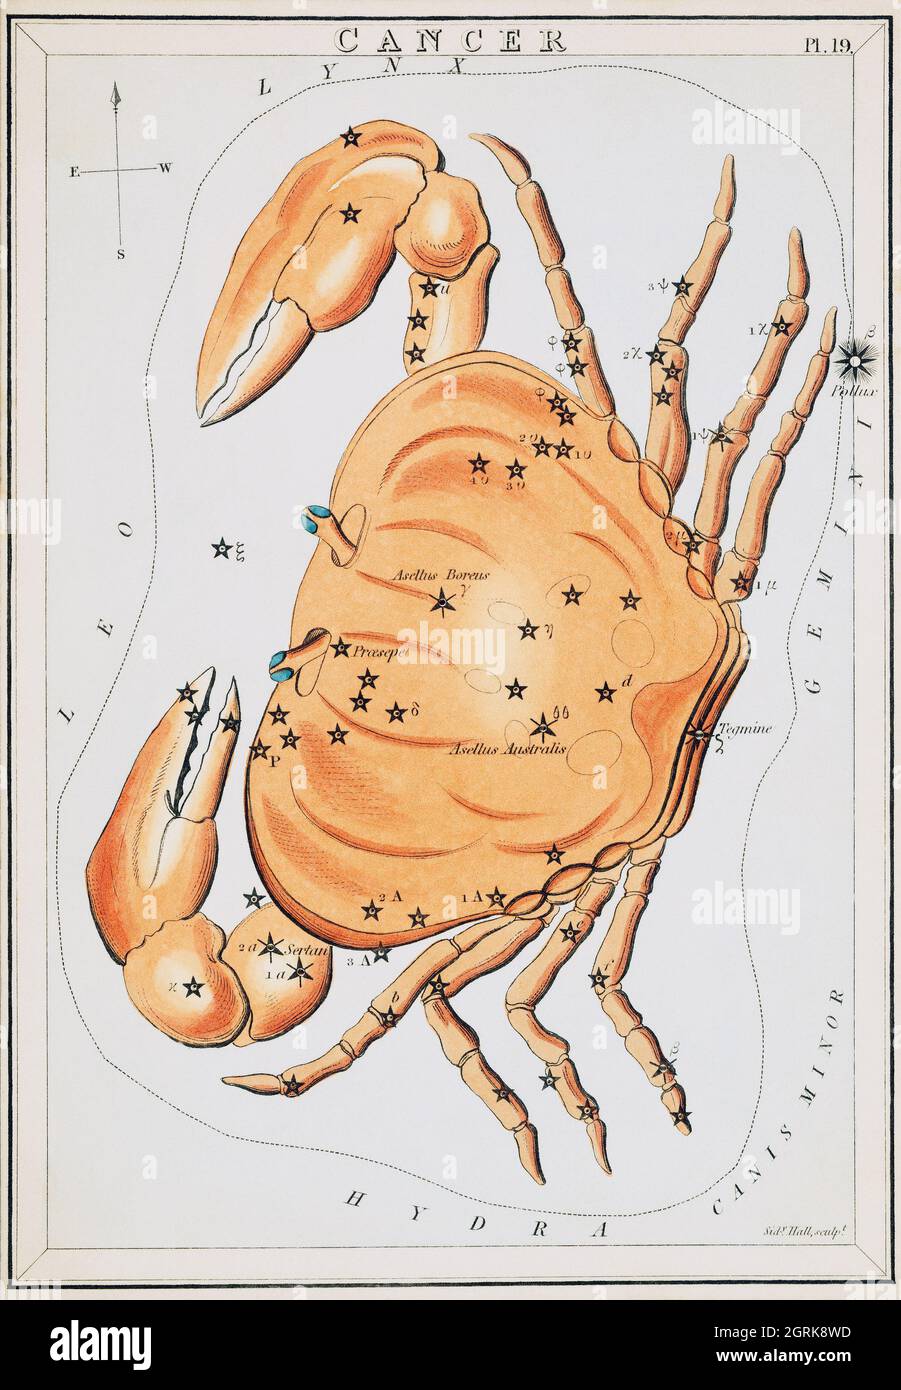 Sidney Hall (1788-1831) – diagramme astronomique illustrant le zodiaque du cancer. Un crabe formant une constellation. Vers 1825. Banque D'Images